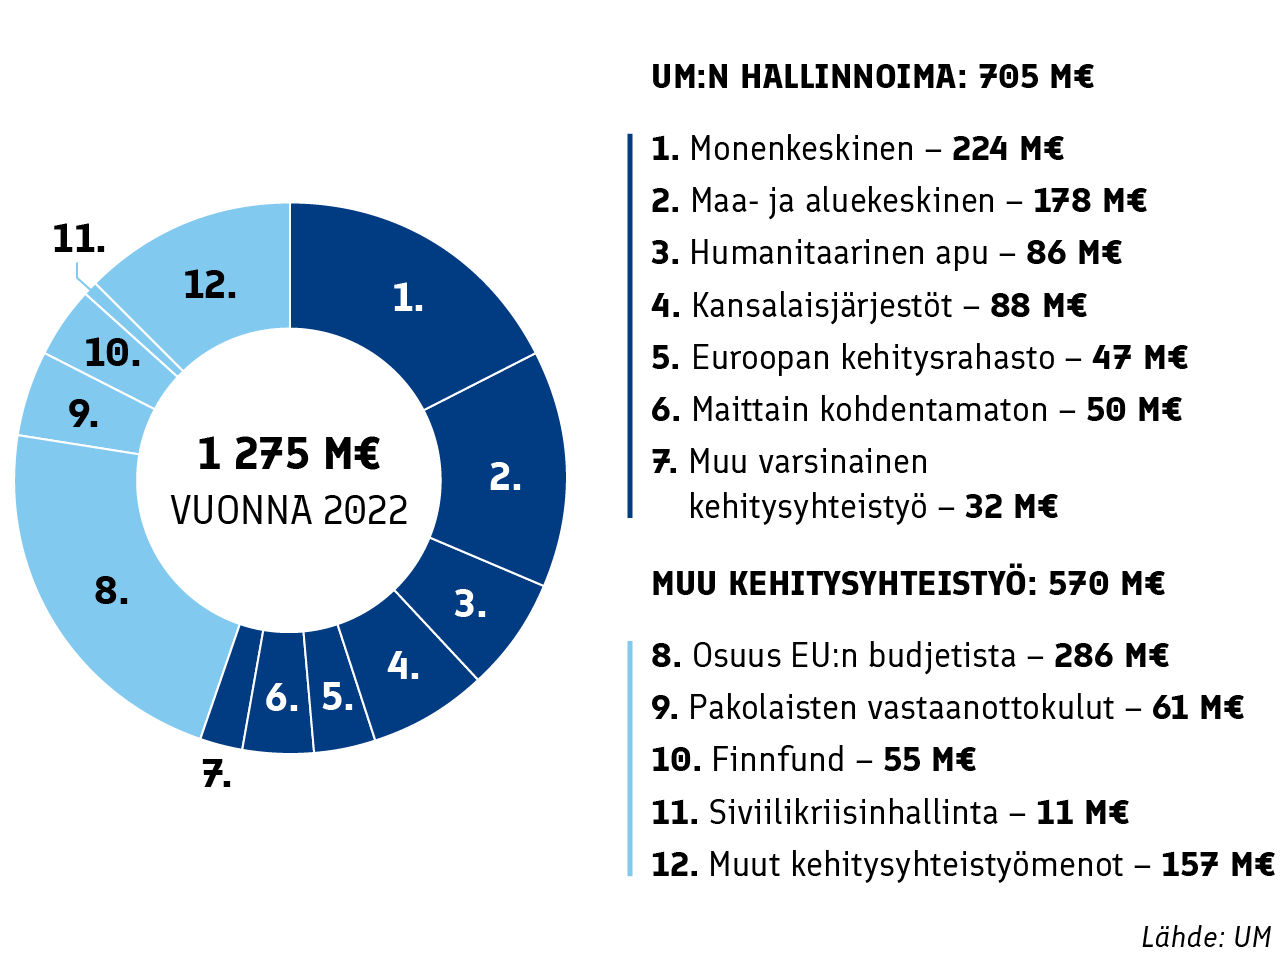 Suomen kehitysyhteistyövarat vuodelle 2022. Ulkoministeriön hallinnoima tuki on yhteensä 705 miljoonaa euroa. Tähän sisältyvät monenkeskinen 224 miljoonaa, maa- ja aluekeskinen 178 miljoonaa, humanitaarinen apu 86 miljoonaa, kansalaisjärjestöt 88 miljoonaa, Euroopan kehitysrahasto 47 miljoonaa, maittain kohdentamaton tuki 50 miljoonaa ja muu varsinainen kehitysyhteistyö 32 miljoonaa euroa. Näiden lisäksi on niin sanottu muu kehitysyhteistyö, joka on yhteensä 570 miljoonaa euroa. Siihen sisältyy Suomen osuus EU:n budjetista 286 miljoonaa, pakolaisten vastaanottokulut 61 miljoonaa, Finnfund 55 miljoonaa, siviilikriisinhallinta 11 miljoonaa ja muut kehitysyhteistyömenot 157 miljoonaa euroa.